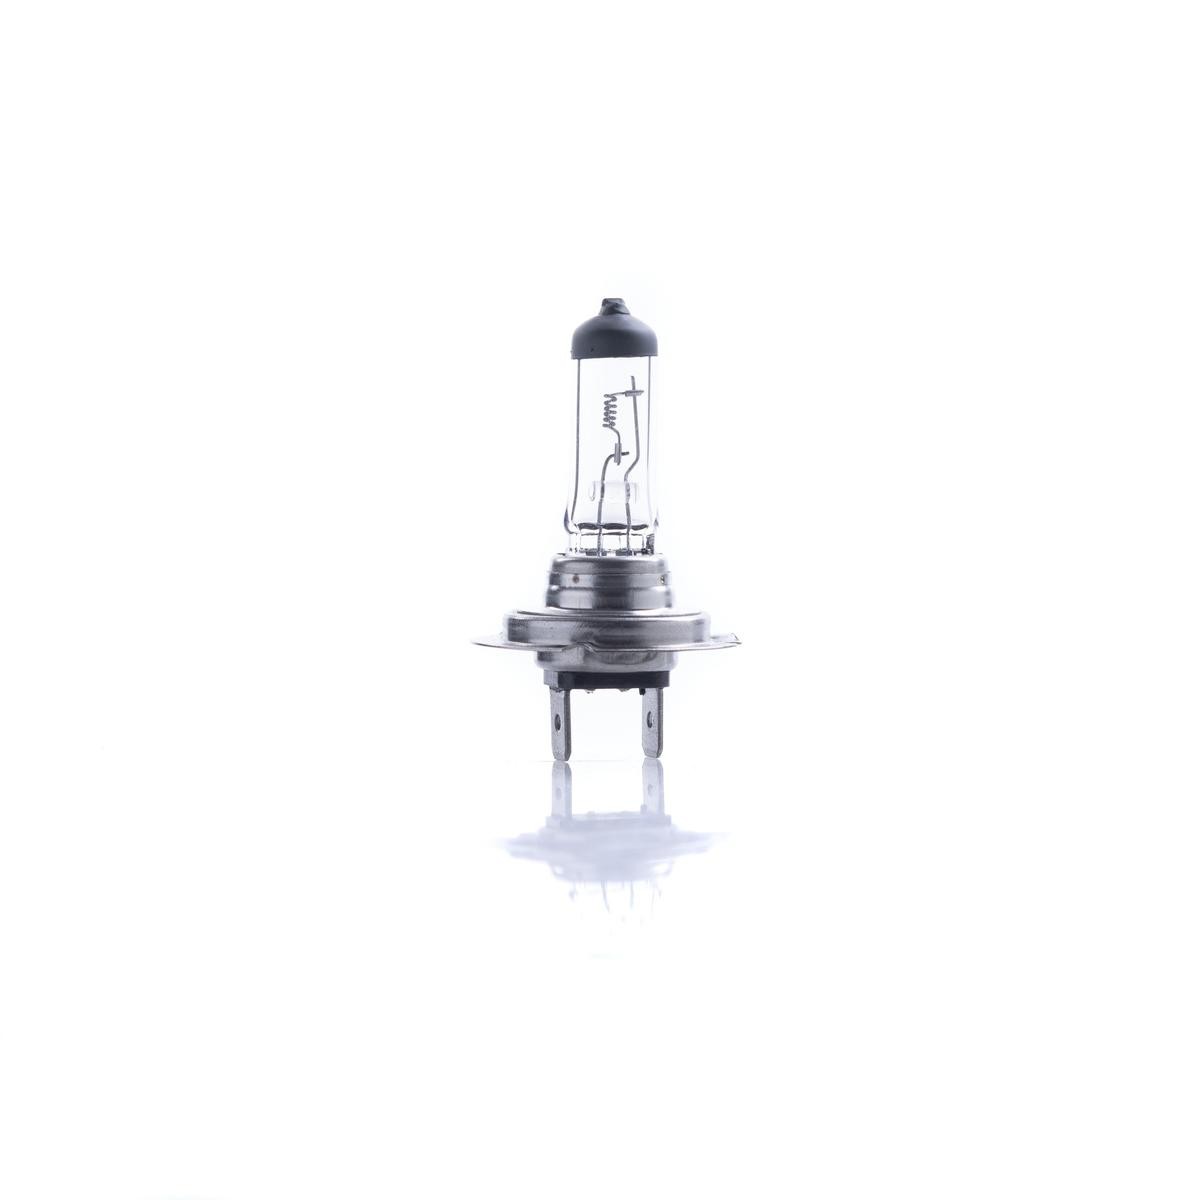 Abblendlicht-Glühlampe für Golf 6 LED und Xenon kaufen ▷ AUTODOC